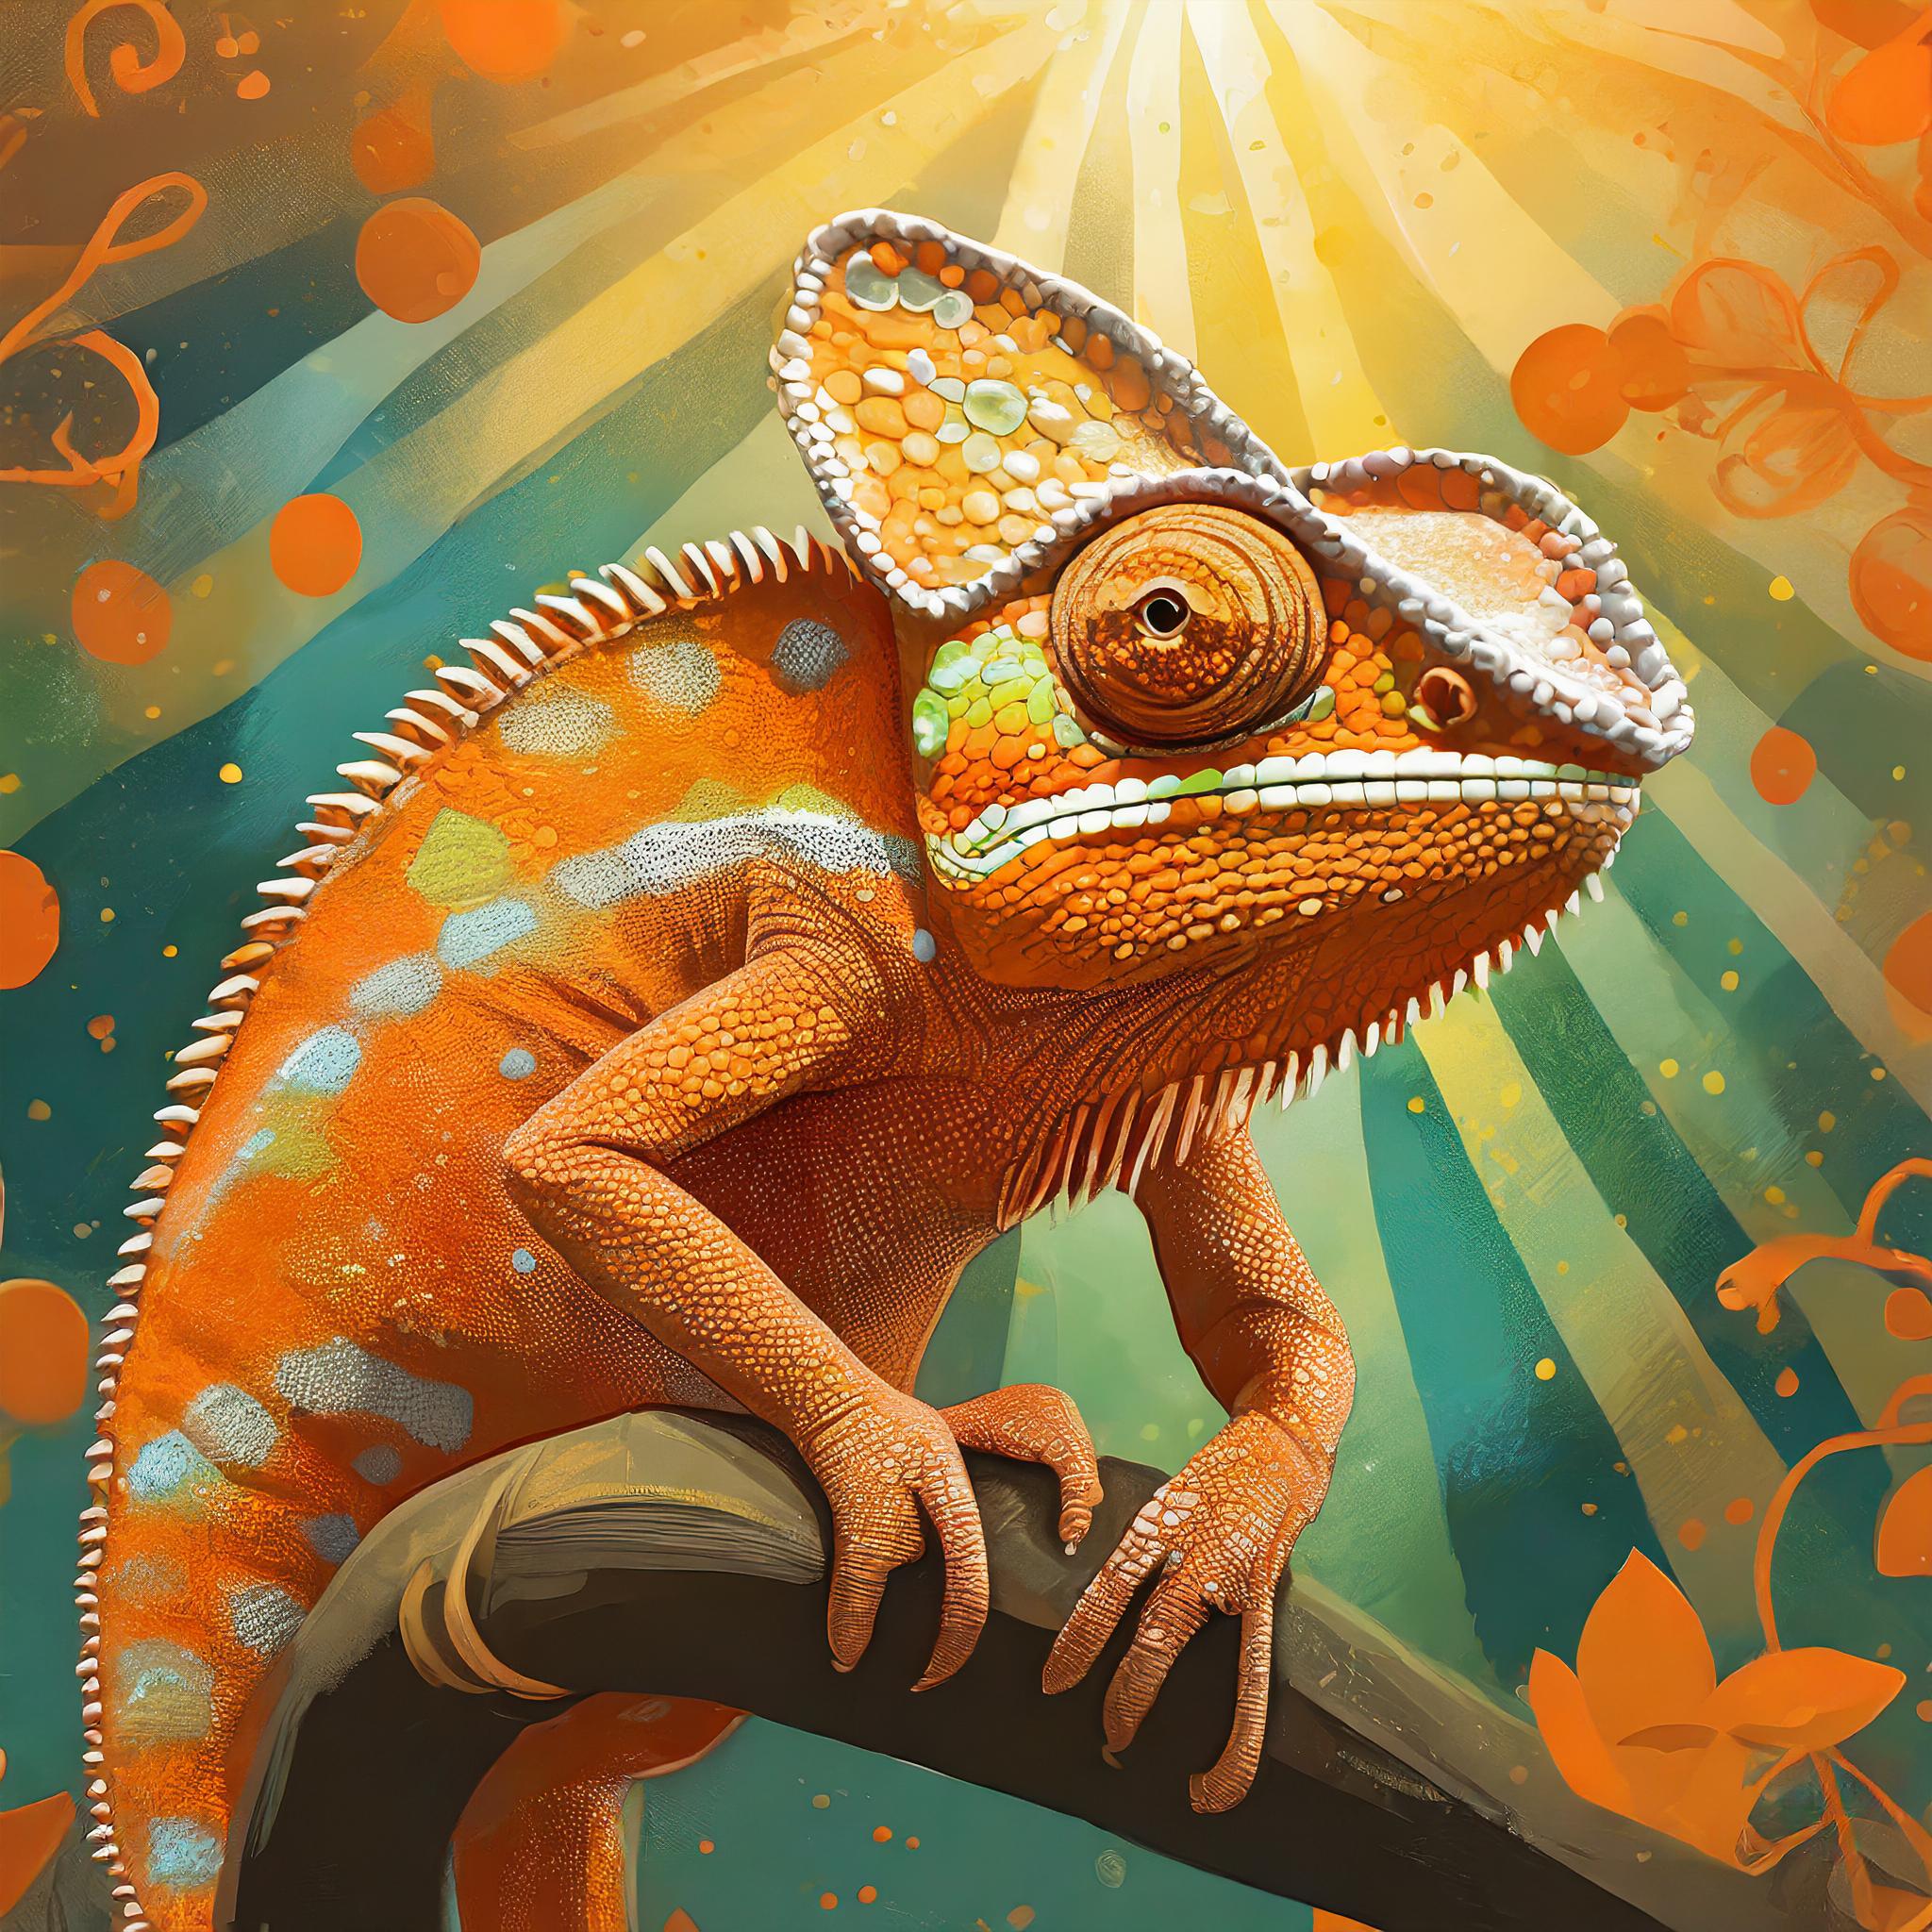 An orange chameleon